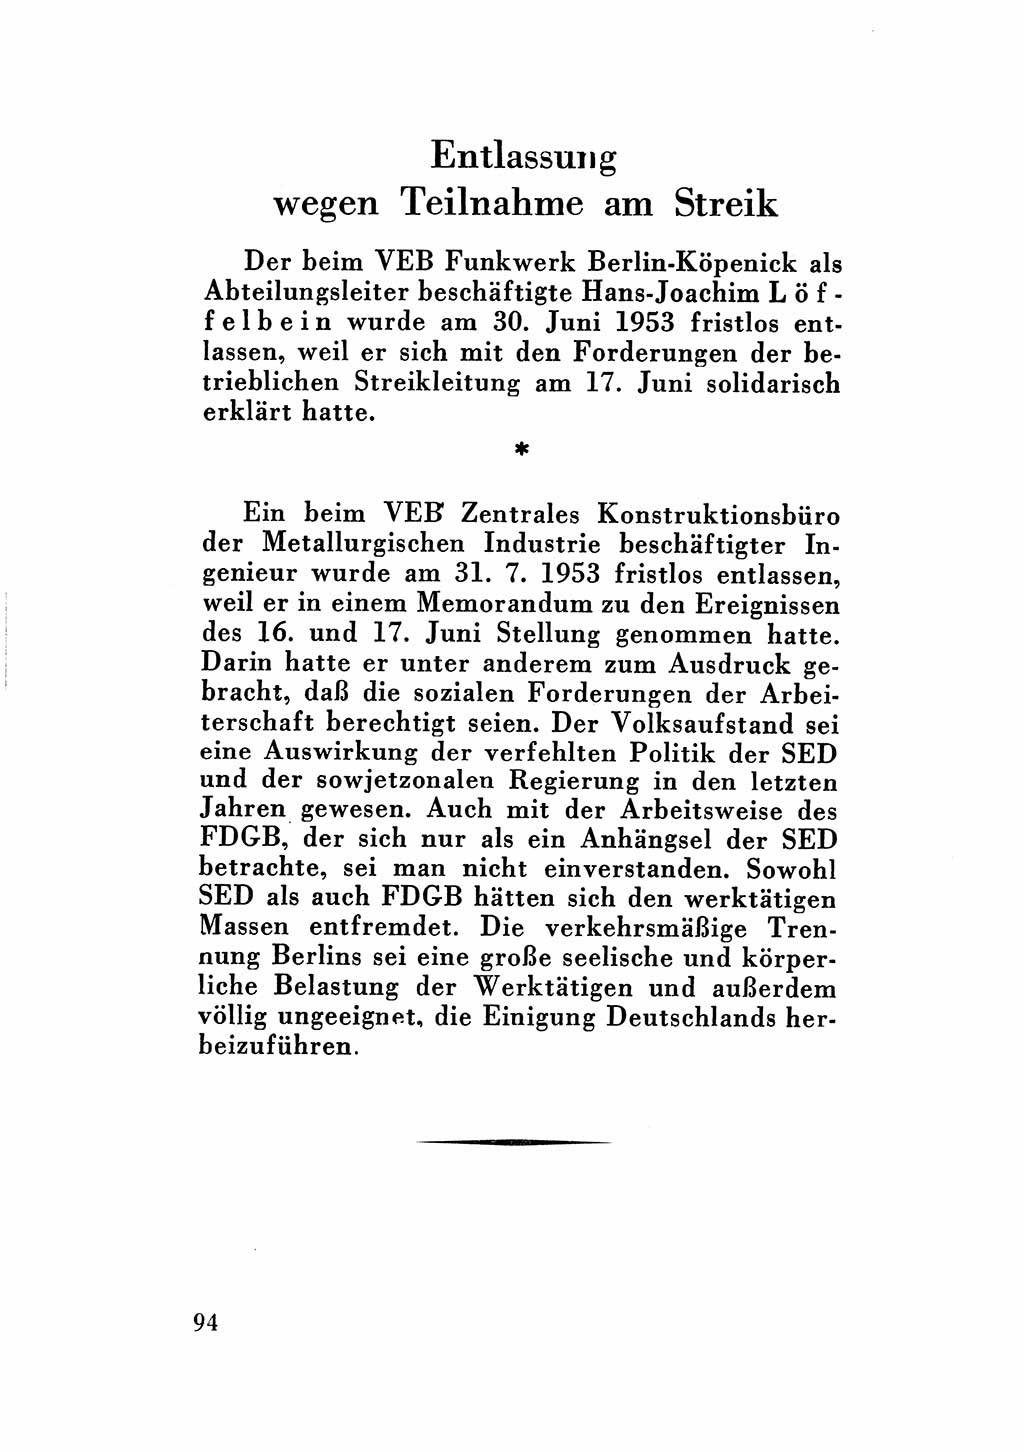 Katalog des Unrechts, Untersuchungsausschuß Freiheitlicher Juristen (UfJ) [Bundesrepublik Deutschland (BRD)] 1956, Seite 94 (Kat. UnR. UfJ BRD 1956, S. 94)